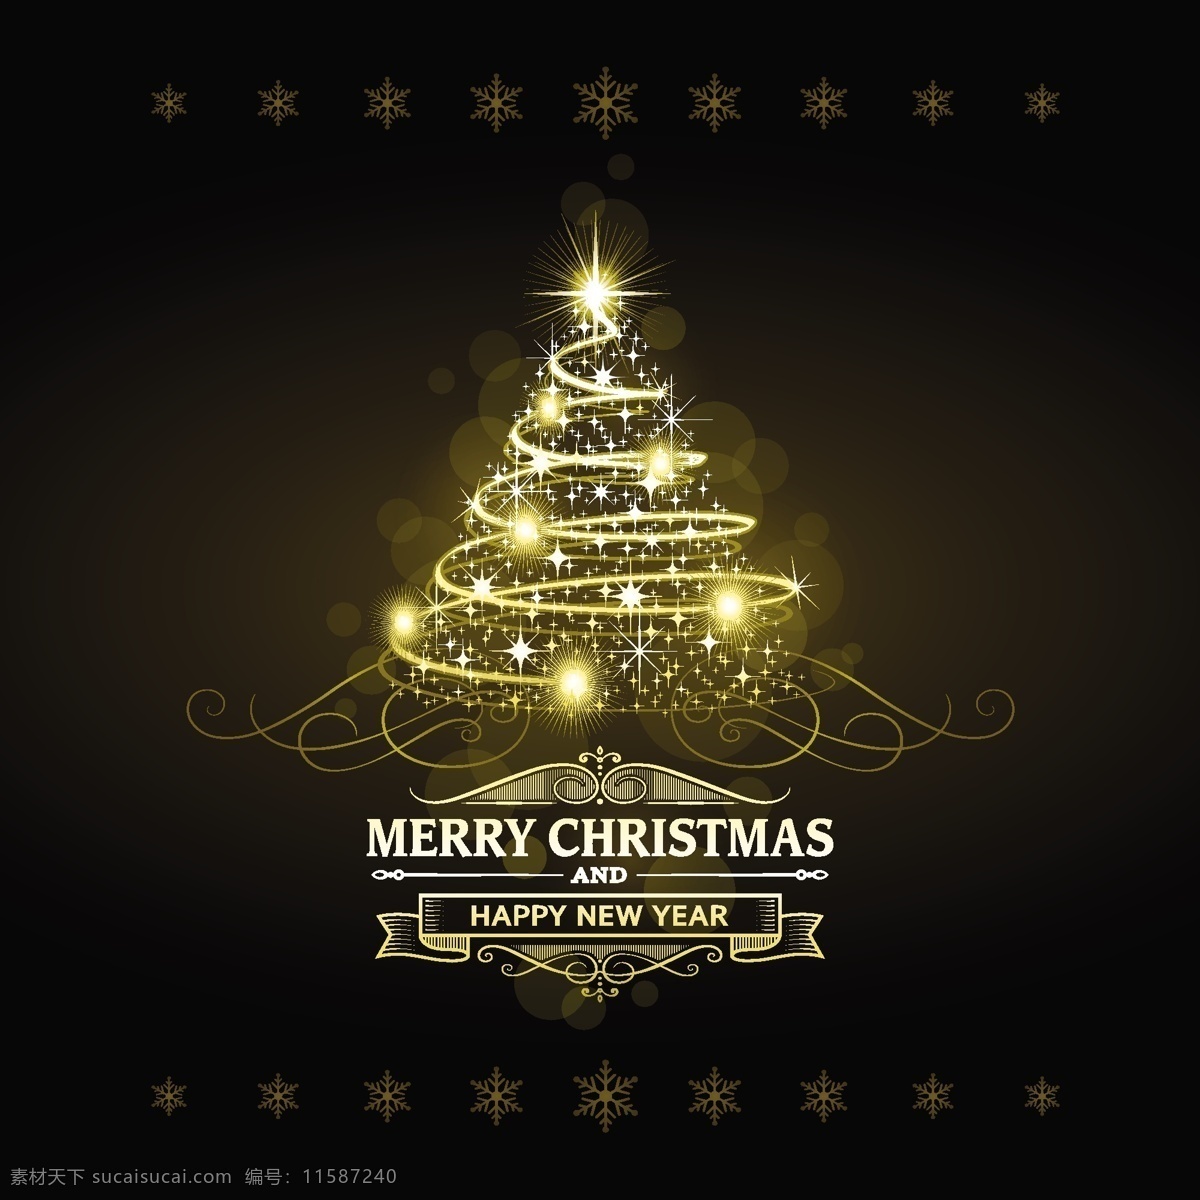 金色 星光 圣诞树 背景 动感 节日素材 梦幻 圣诞 圣诞节 圣诞主题 矢量 模板下载 星光圣诞树